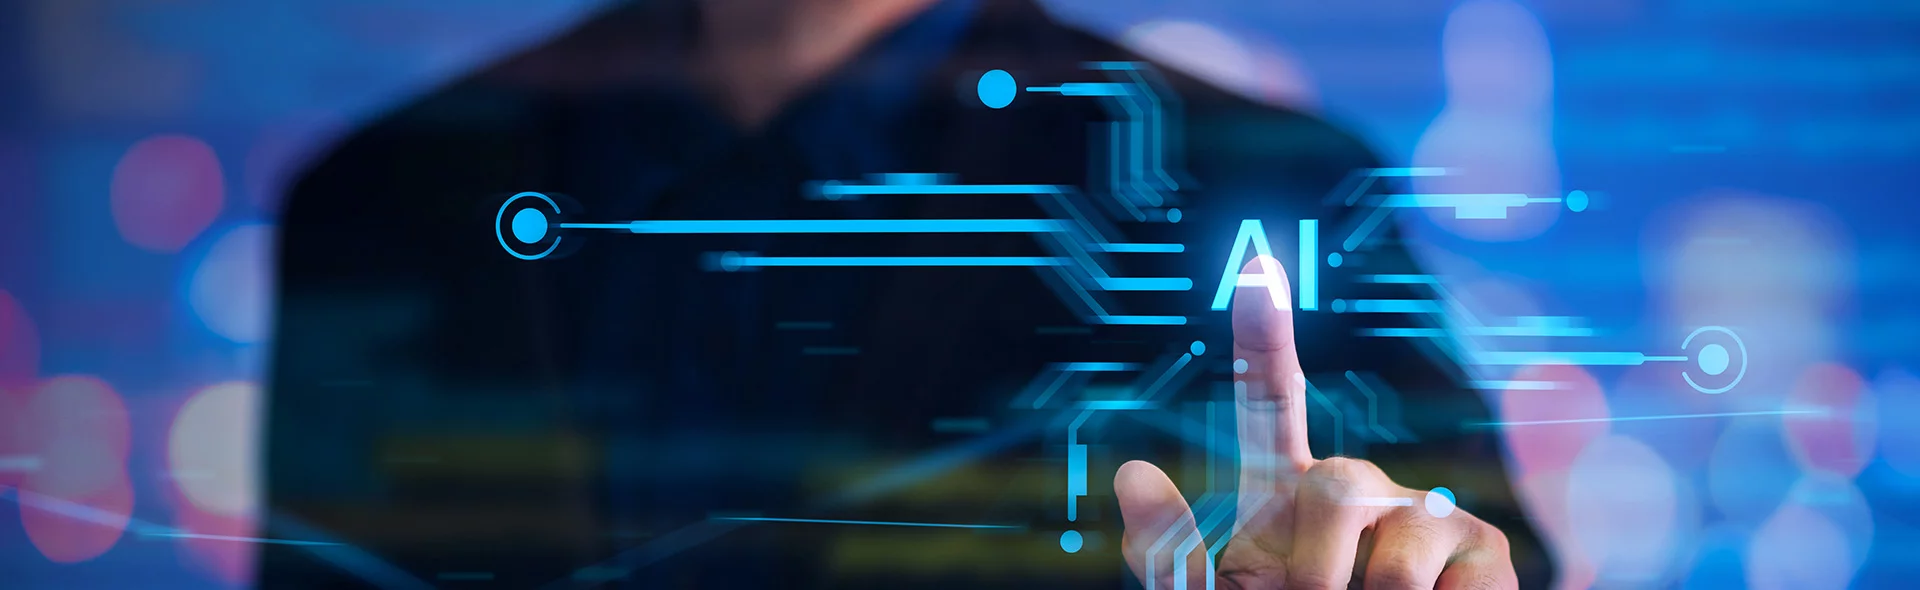 Symbolbild für digitale Transformation: Man sieht, wie ein Mensch mit dem Finger einen Touchdisplay berührt, auf dem AI steht (Artificial Intelligence)